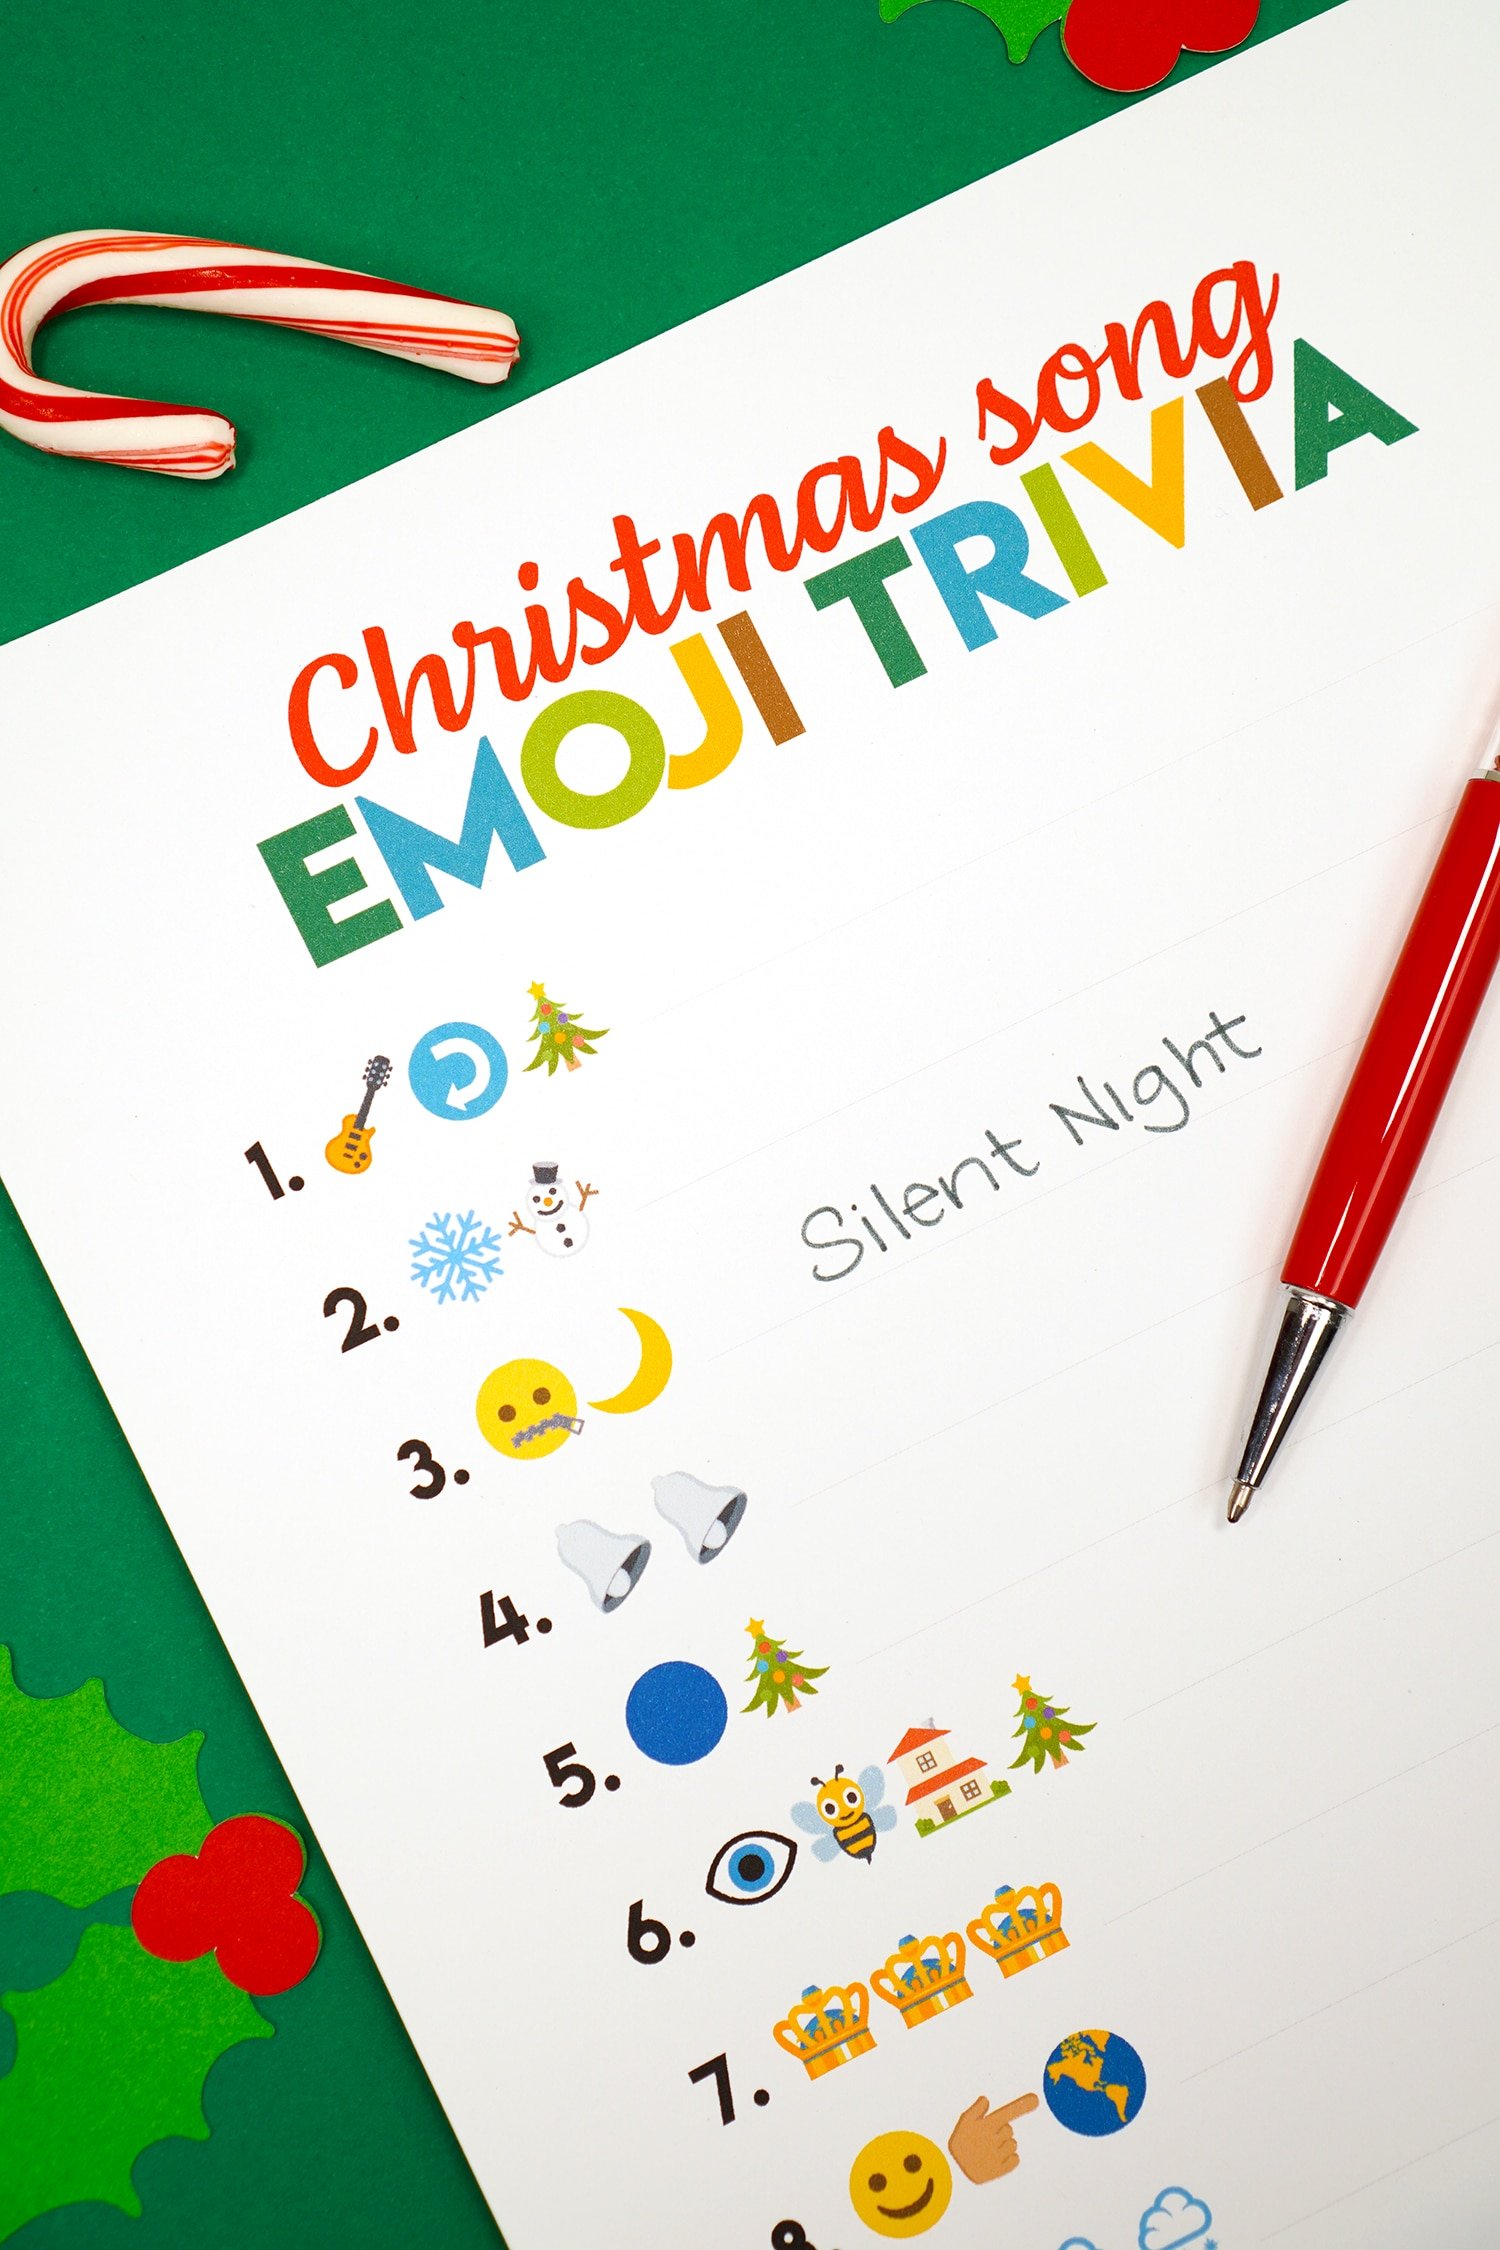 christmas song emoji trivia printable game